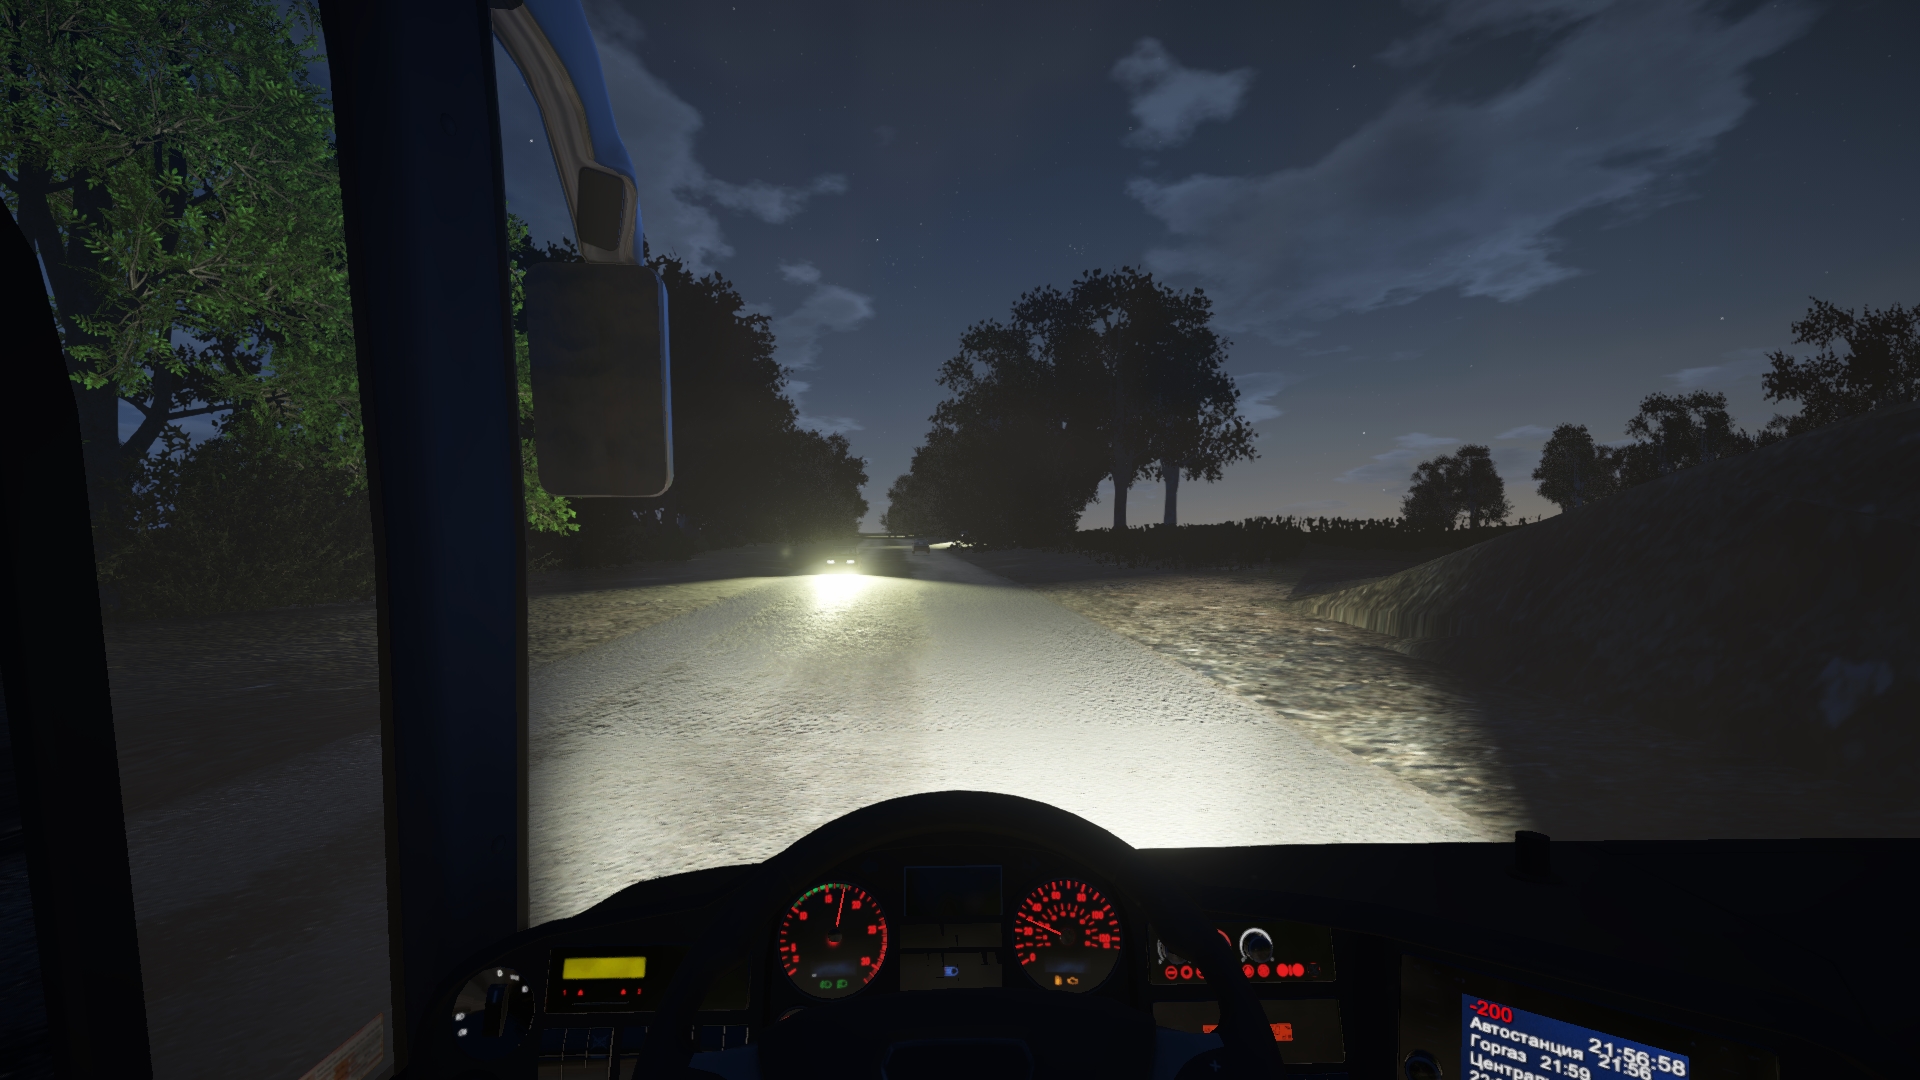 Bus Driver Simulator 2019 Free Download